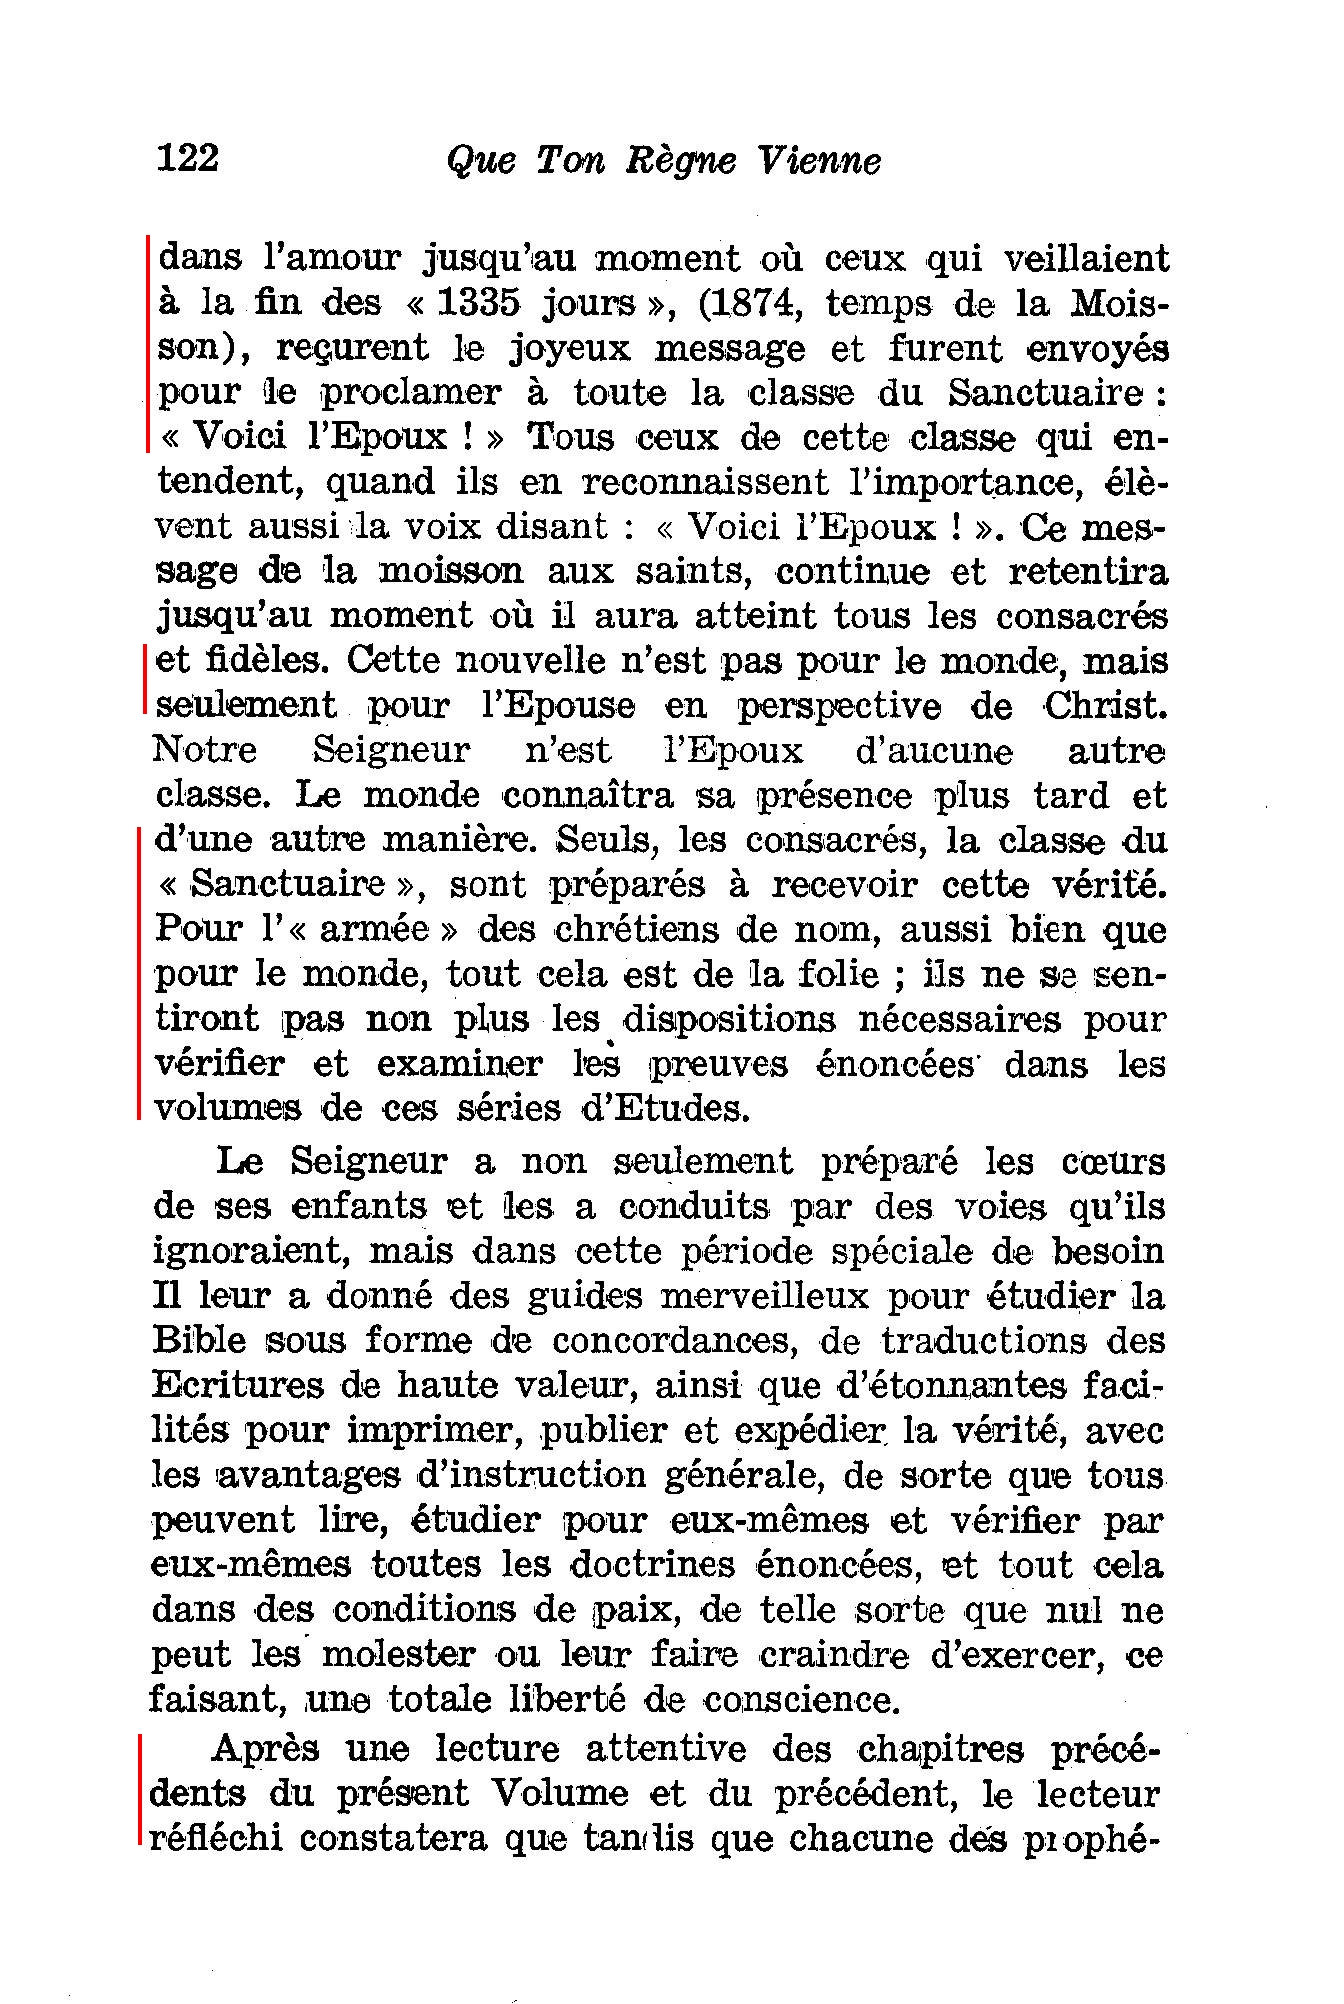 Les fausses prophéties par la Société watch tower - Page 2 6jcz